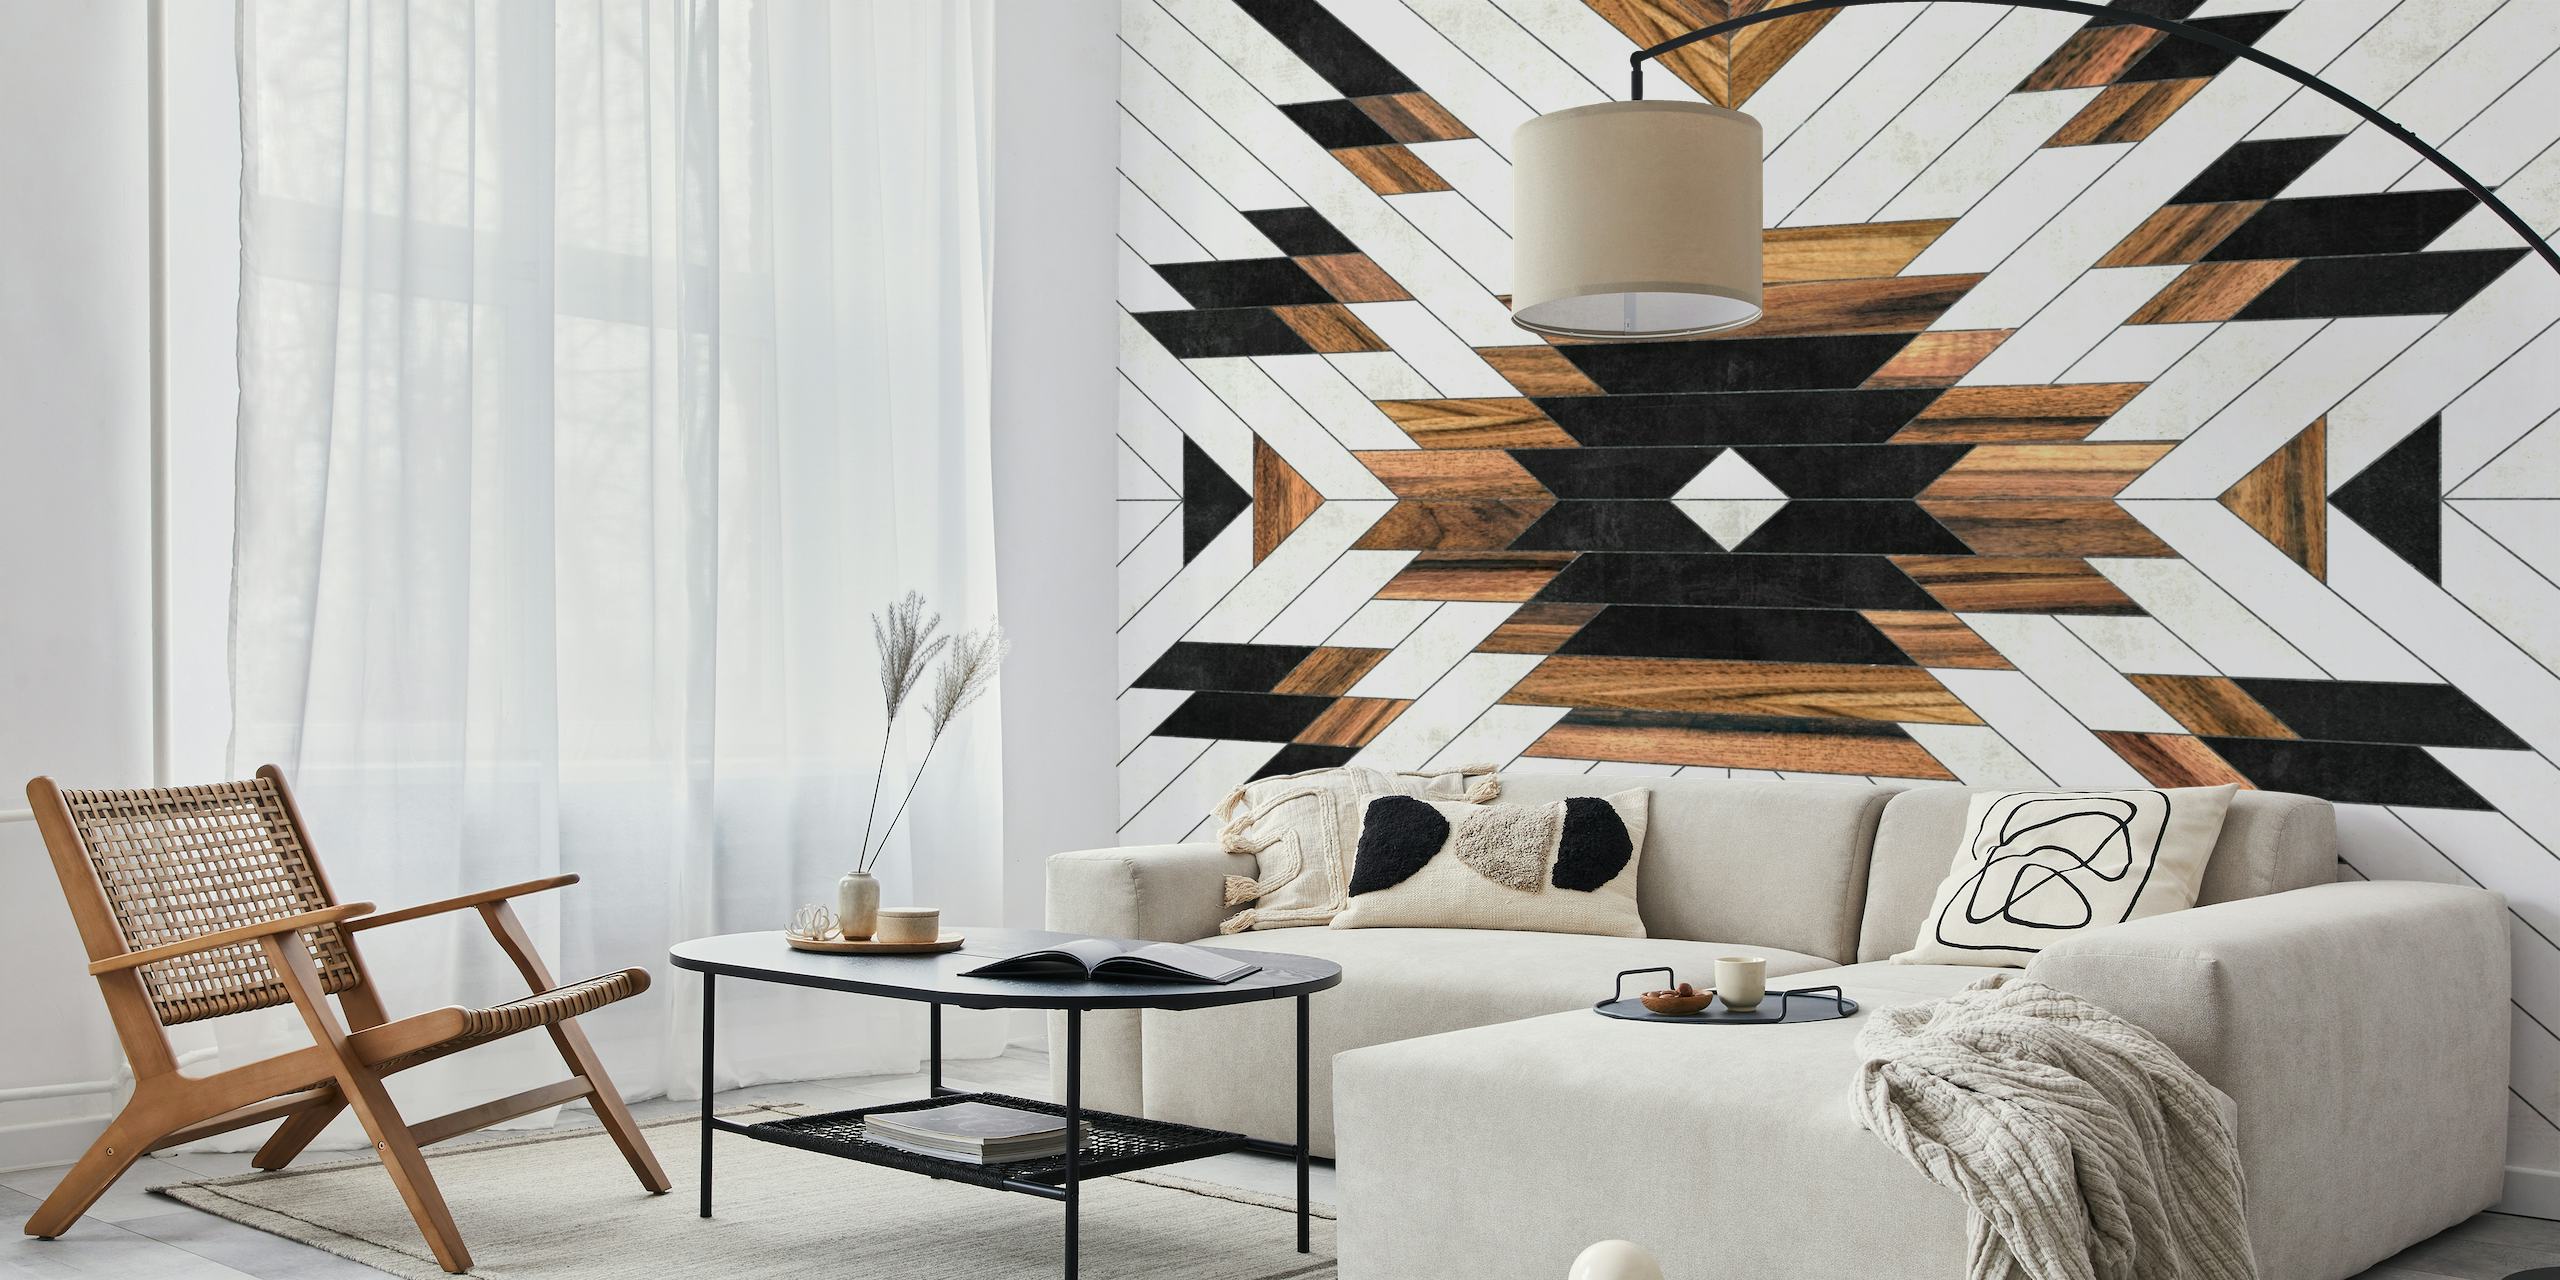 Stedelijke muurschildering met tribal geometrisch patroon met zwarte, witte en houttexturen